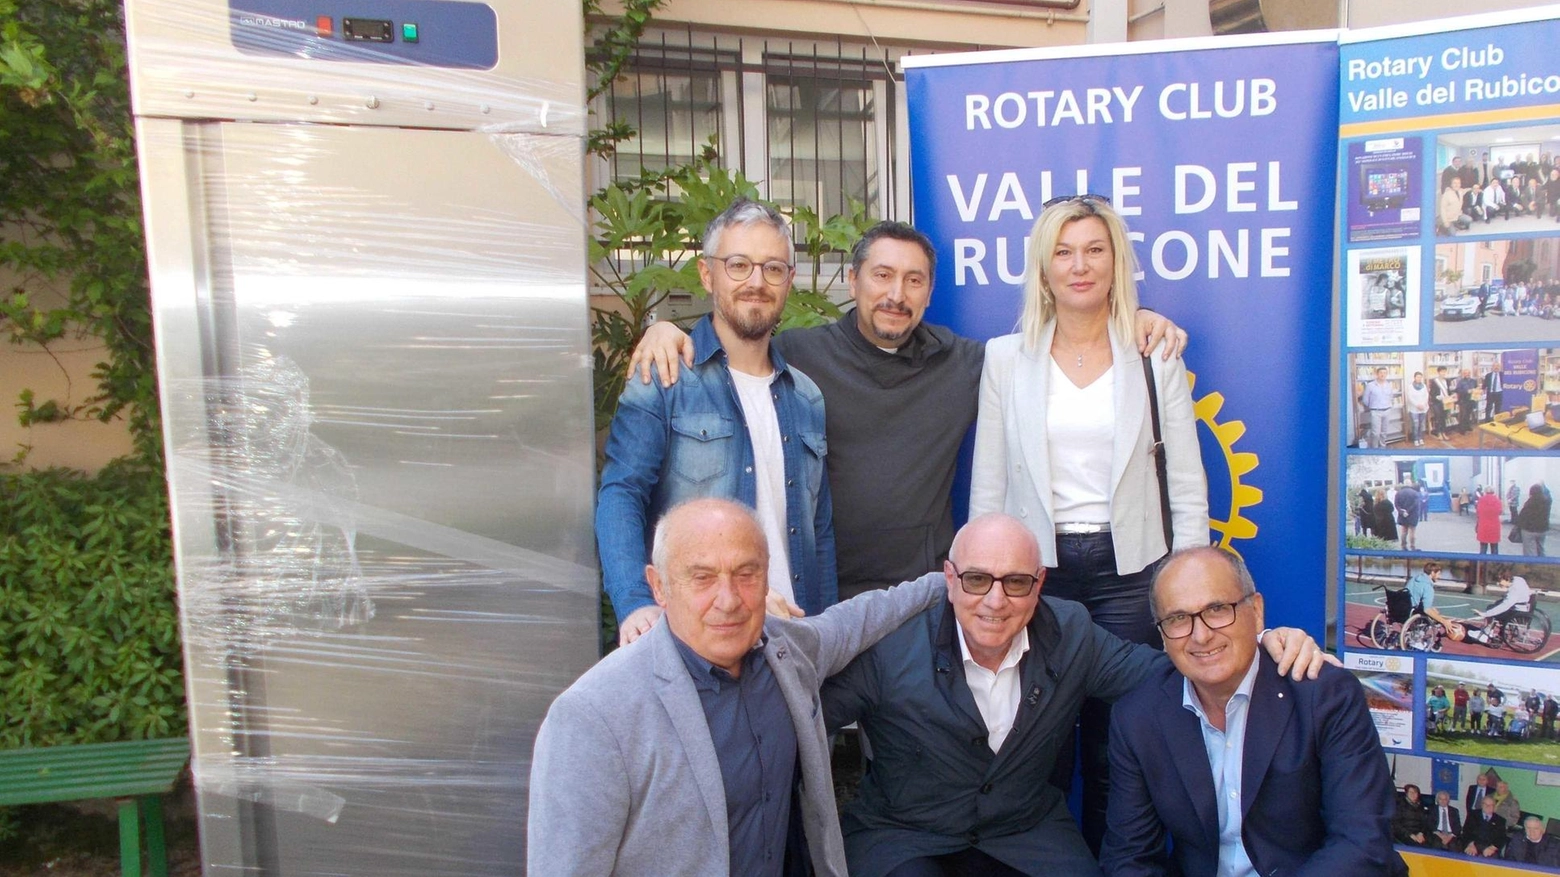 Il Rotary Club Valle del Rubicone dona un frigorifero industriale all'associazione "Amici di Don Baronio" per migliorare l'accoglienza dei ragazzi e delle famiglie. La presidente Monica Morri ringrazia per il sostegno che permette alla comunità di continuare le proprie attività.